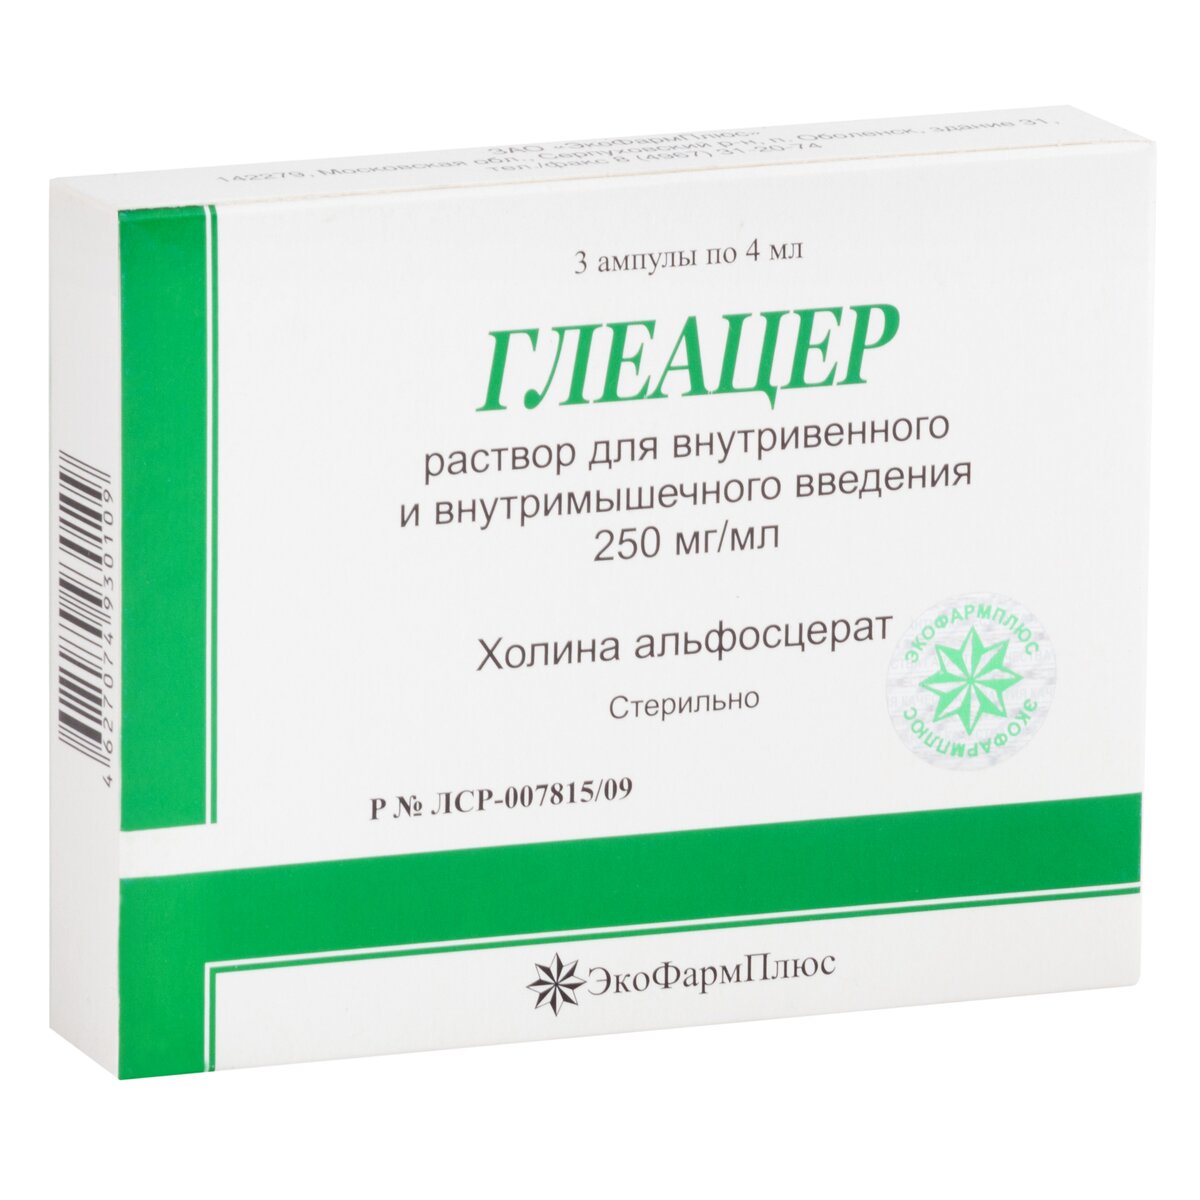 Глеацер 250 мг/мл 4 мл ампулы 3 шт. раствор для внутривенного и внутримышечного введения